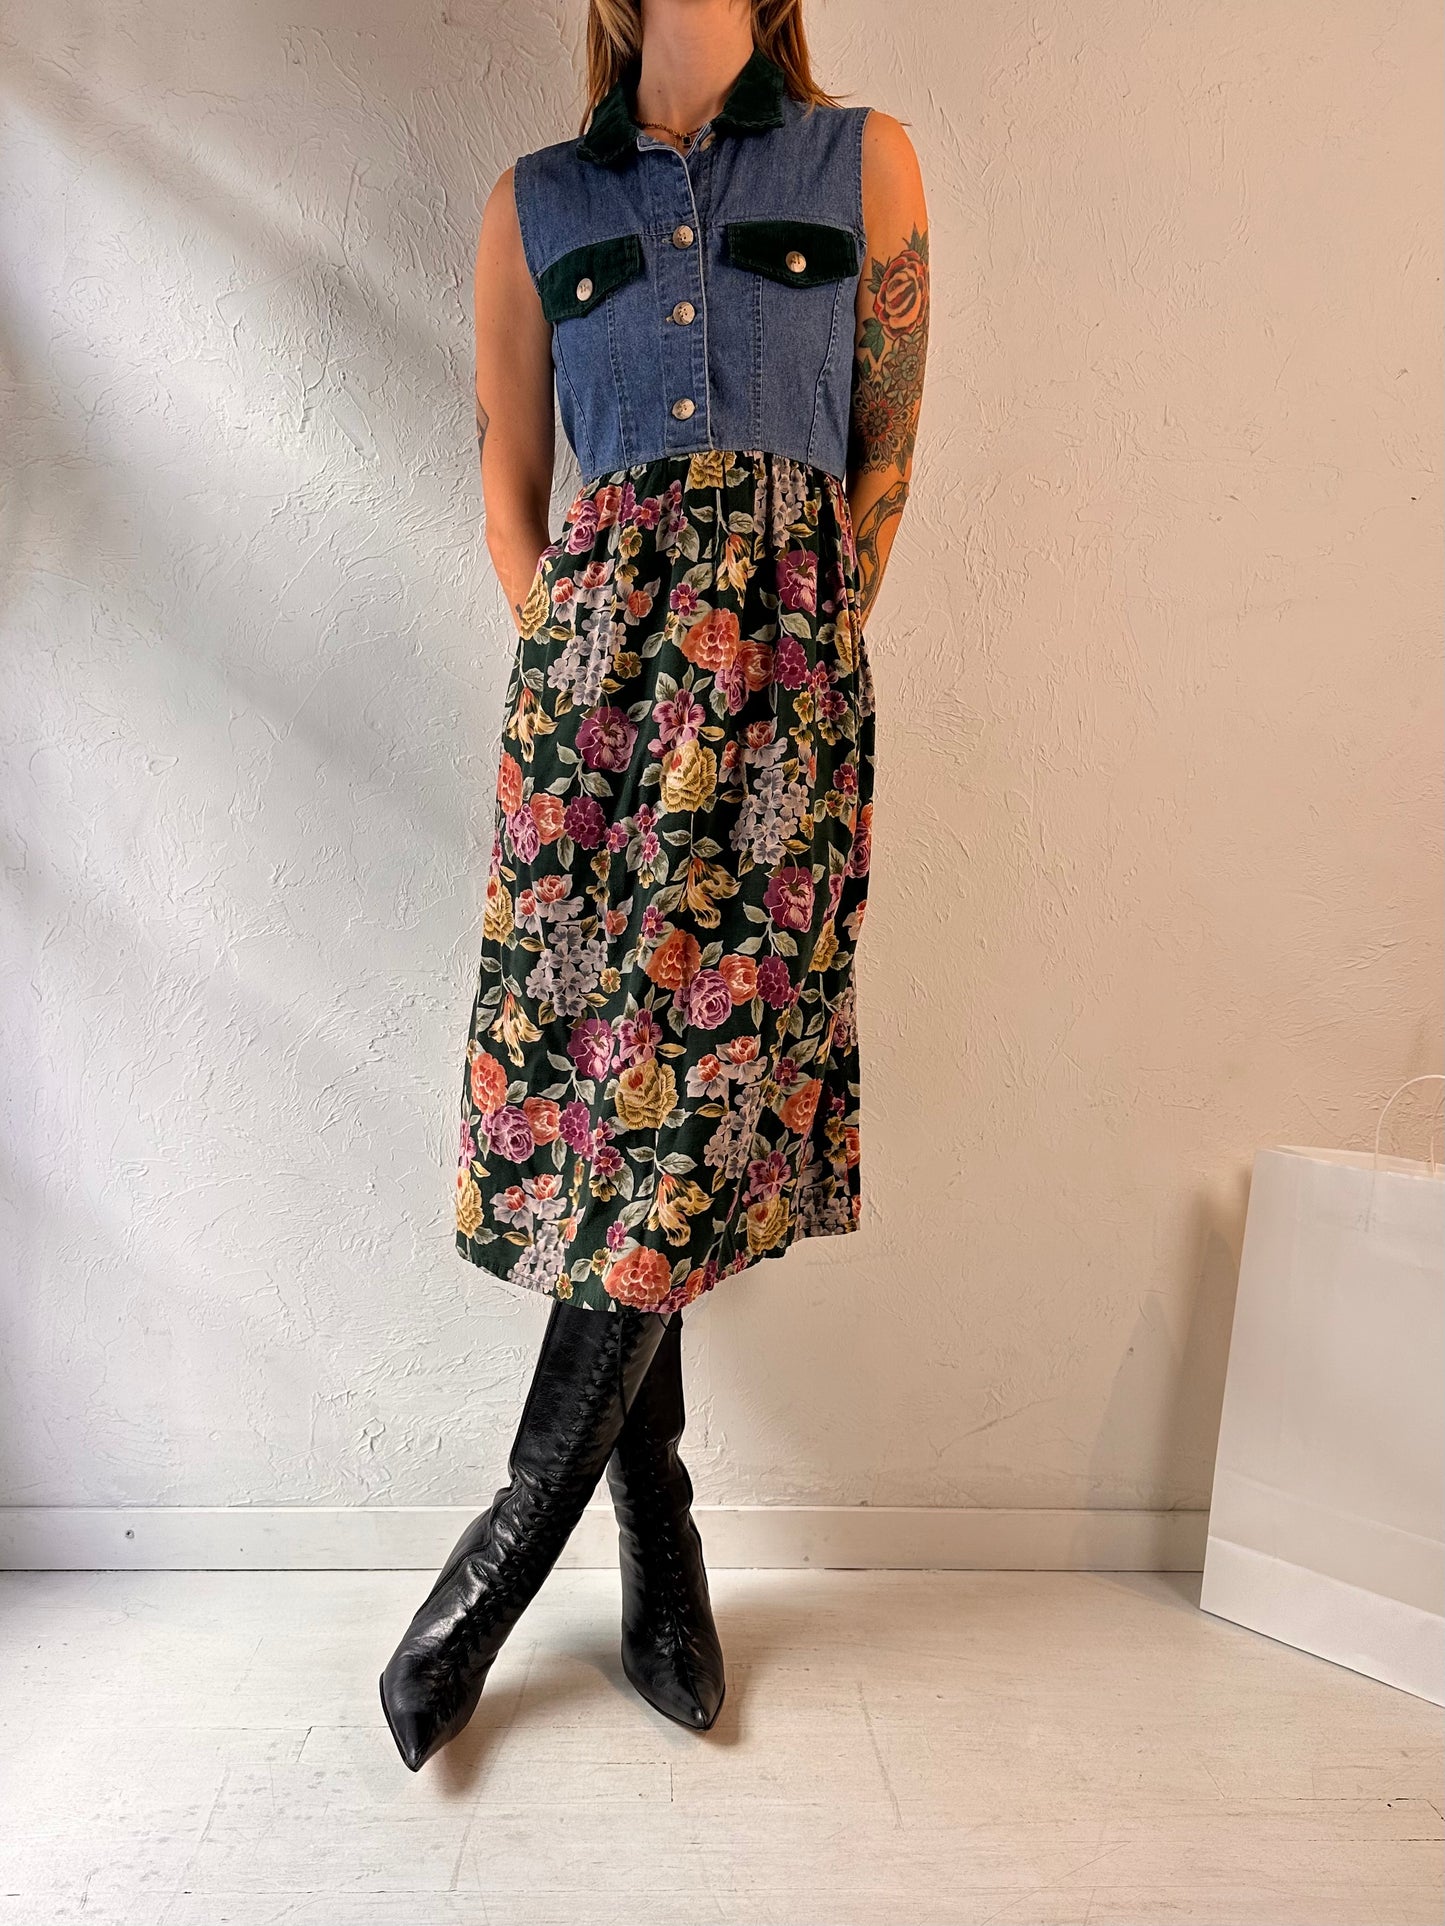 90s 'Peggy Sue' Collared Denim Maxi Dress / Small